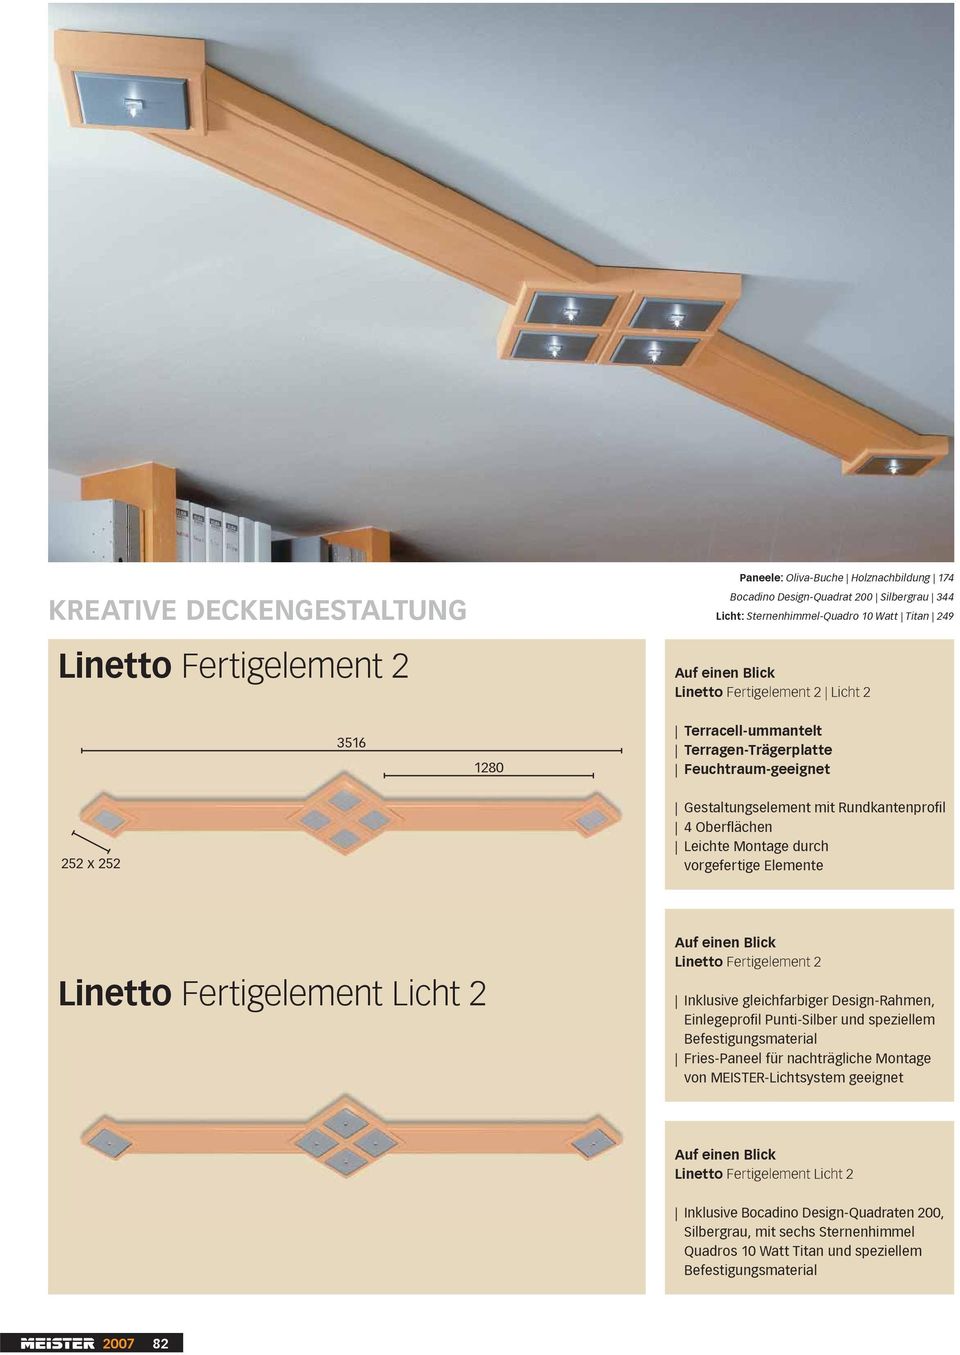 Fertigelement Licht 2 Linetto Fertigelement 2 Inklusive gleichfarbiger Design-Rahmen, Einlegeprofil Punti-Silber und speziellem Befestigungsmaterial Fries-Paneel für nachträgliche Montage von